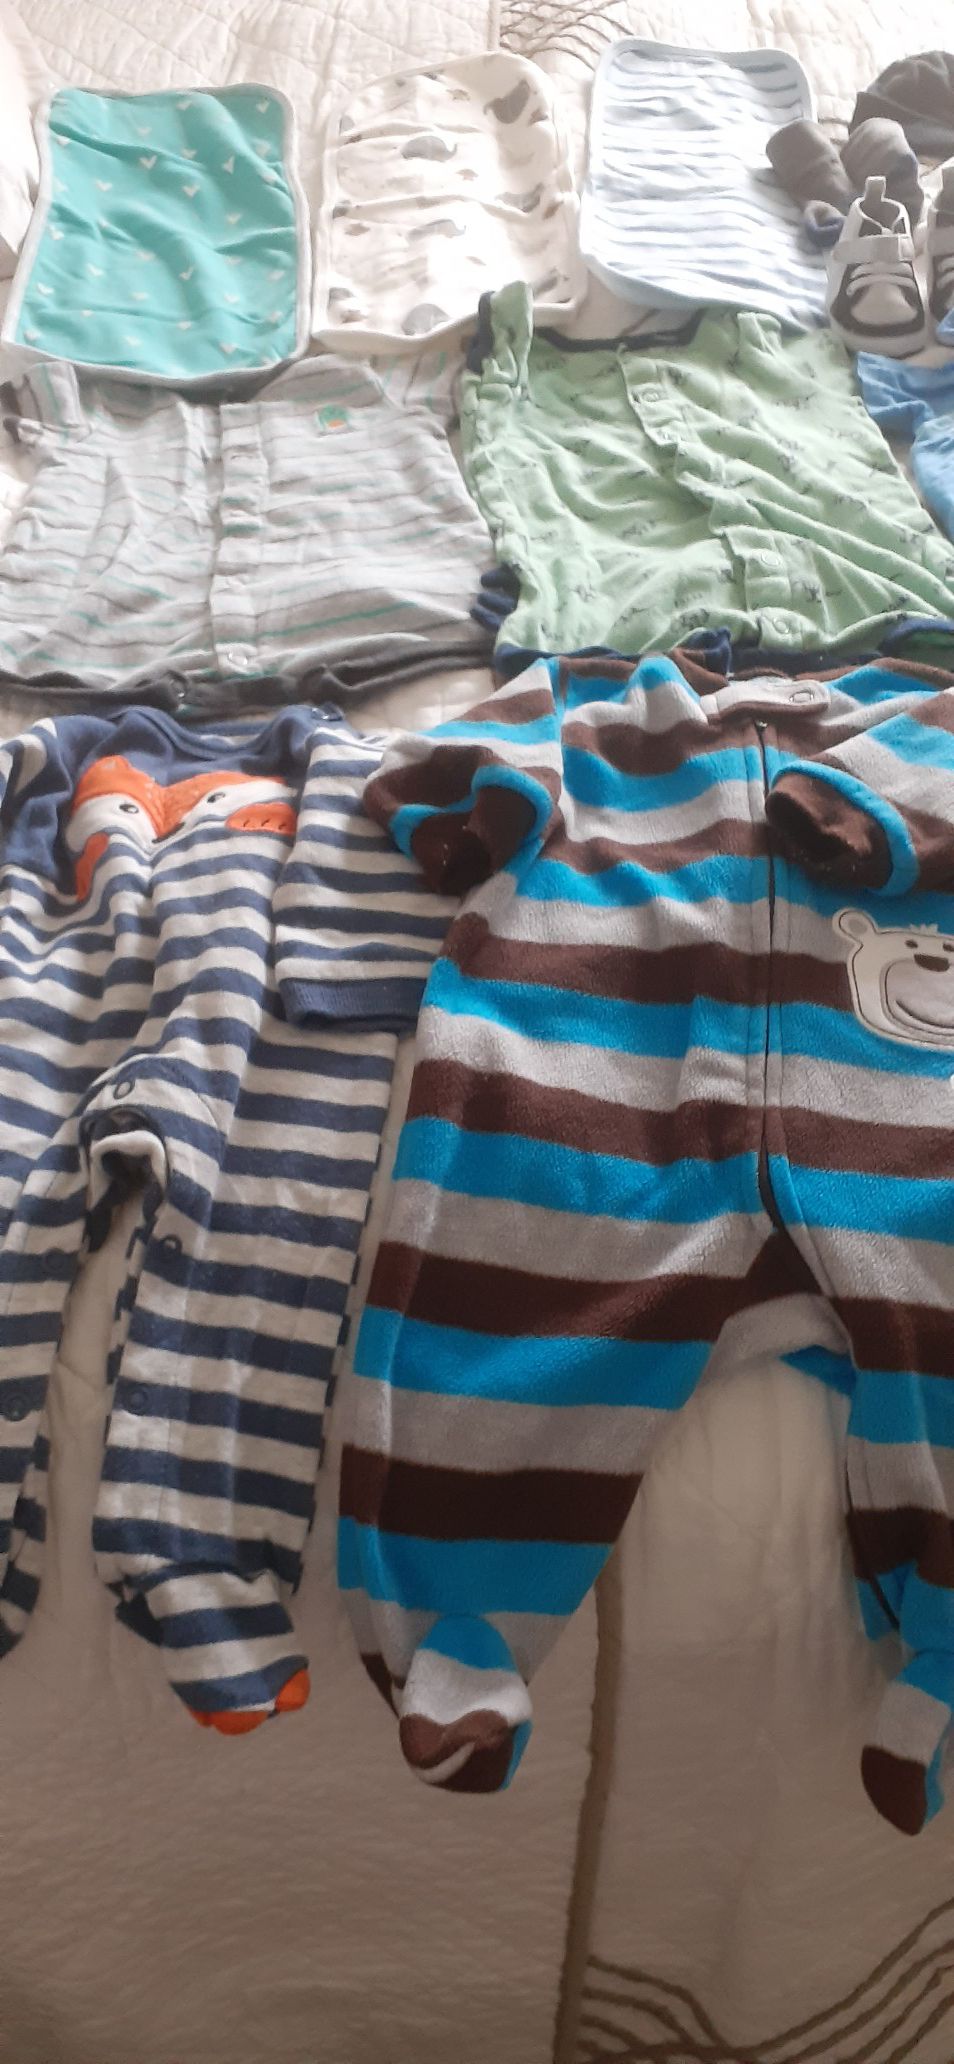 Baby Clothes (0-3 and 3-6)ropa de bebe en buena condiciones todos por $22